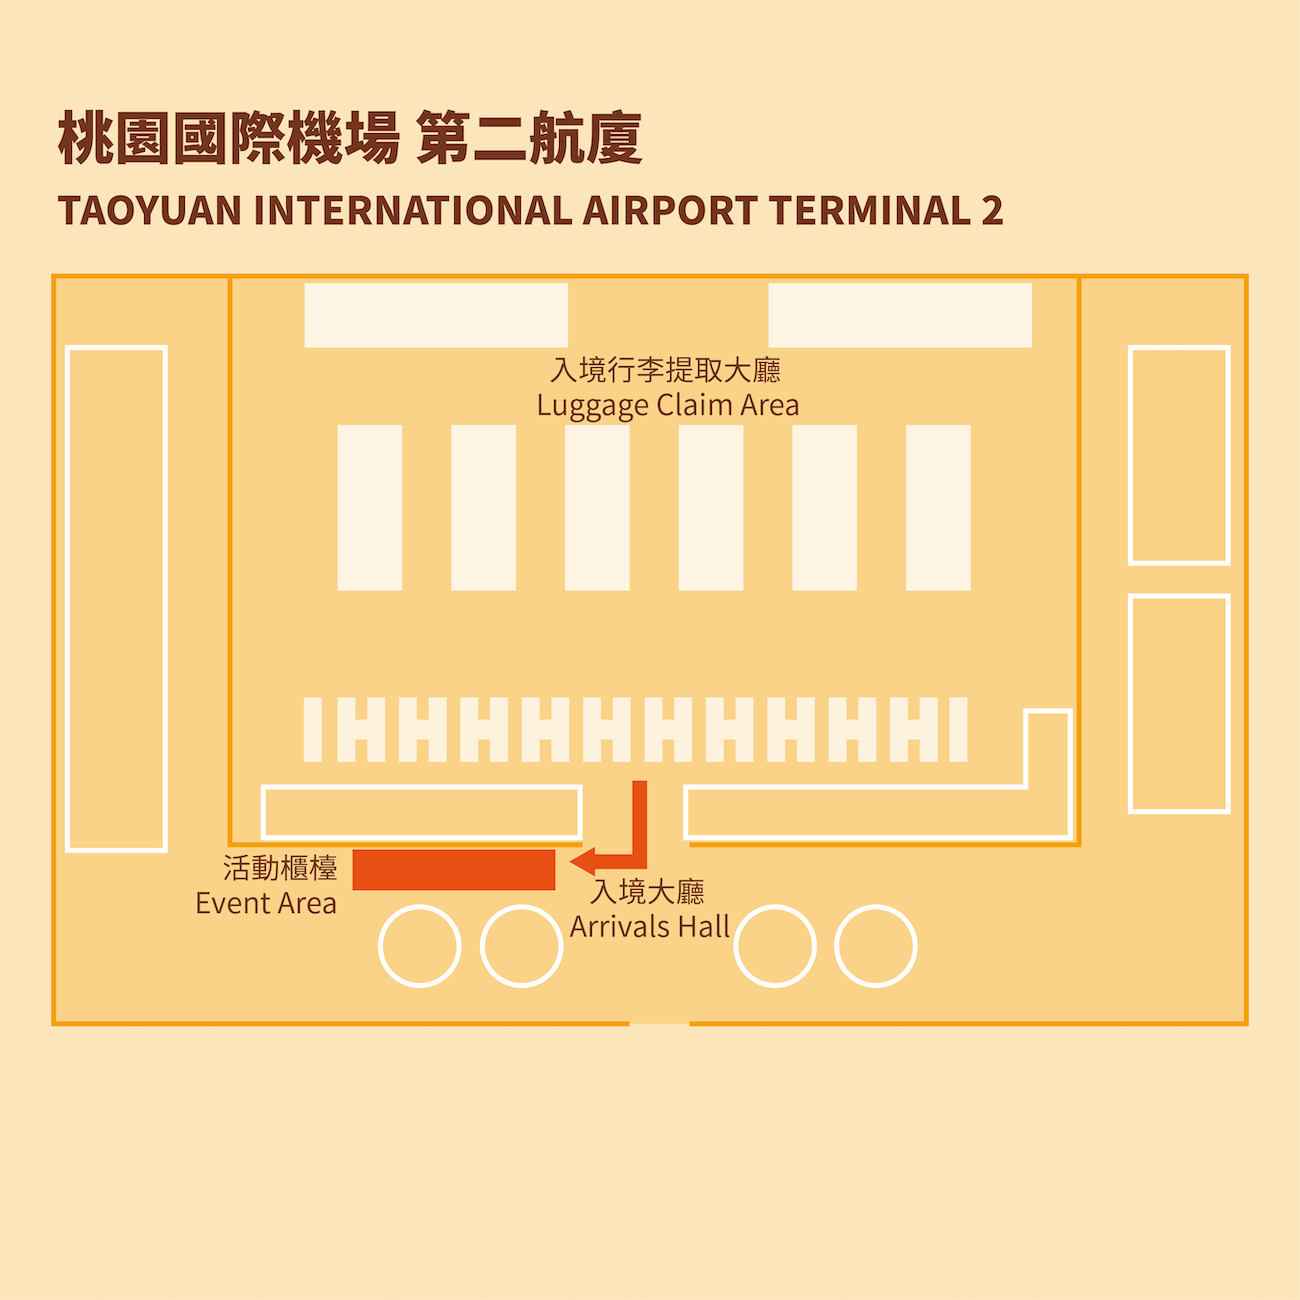 Taoyuan International Airport Terminal 2